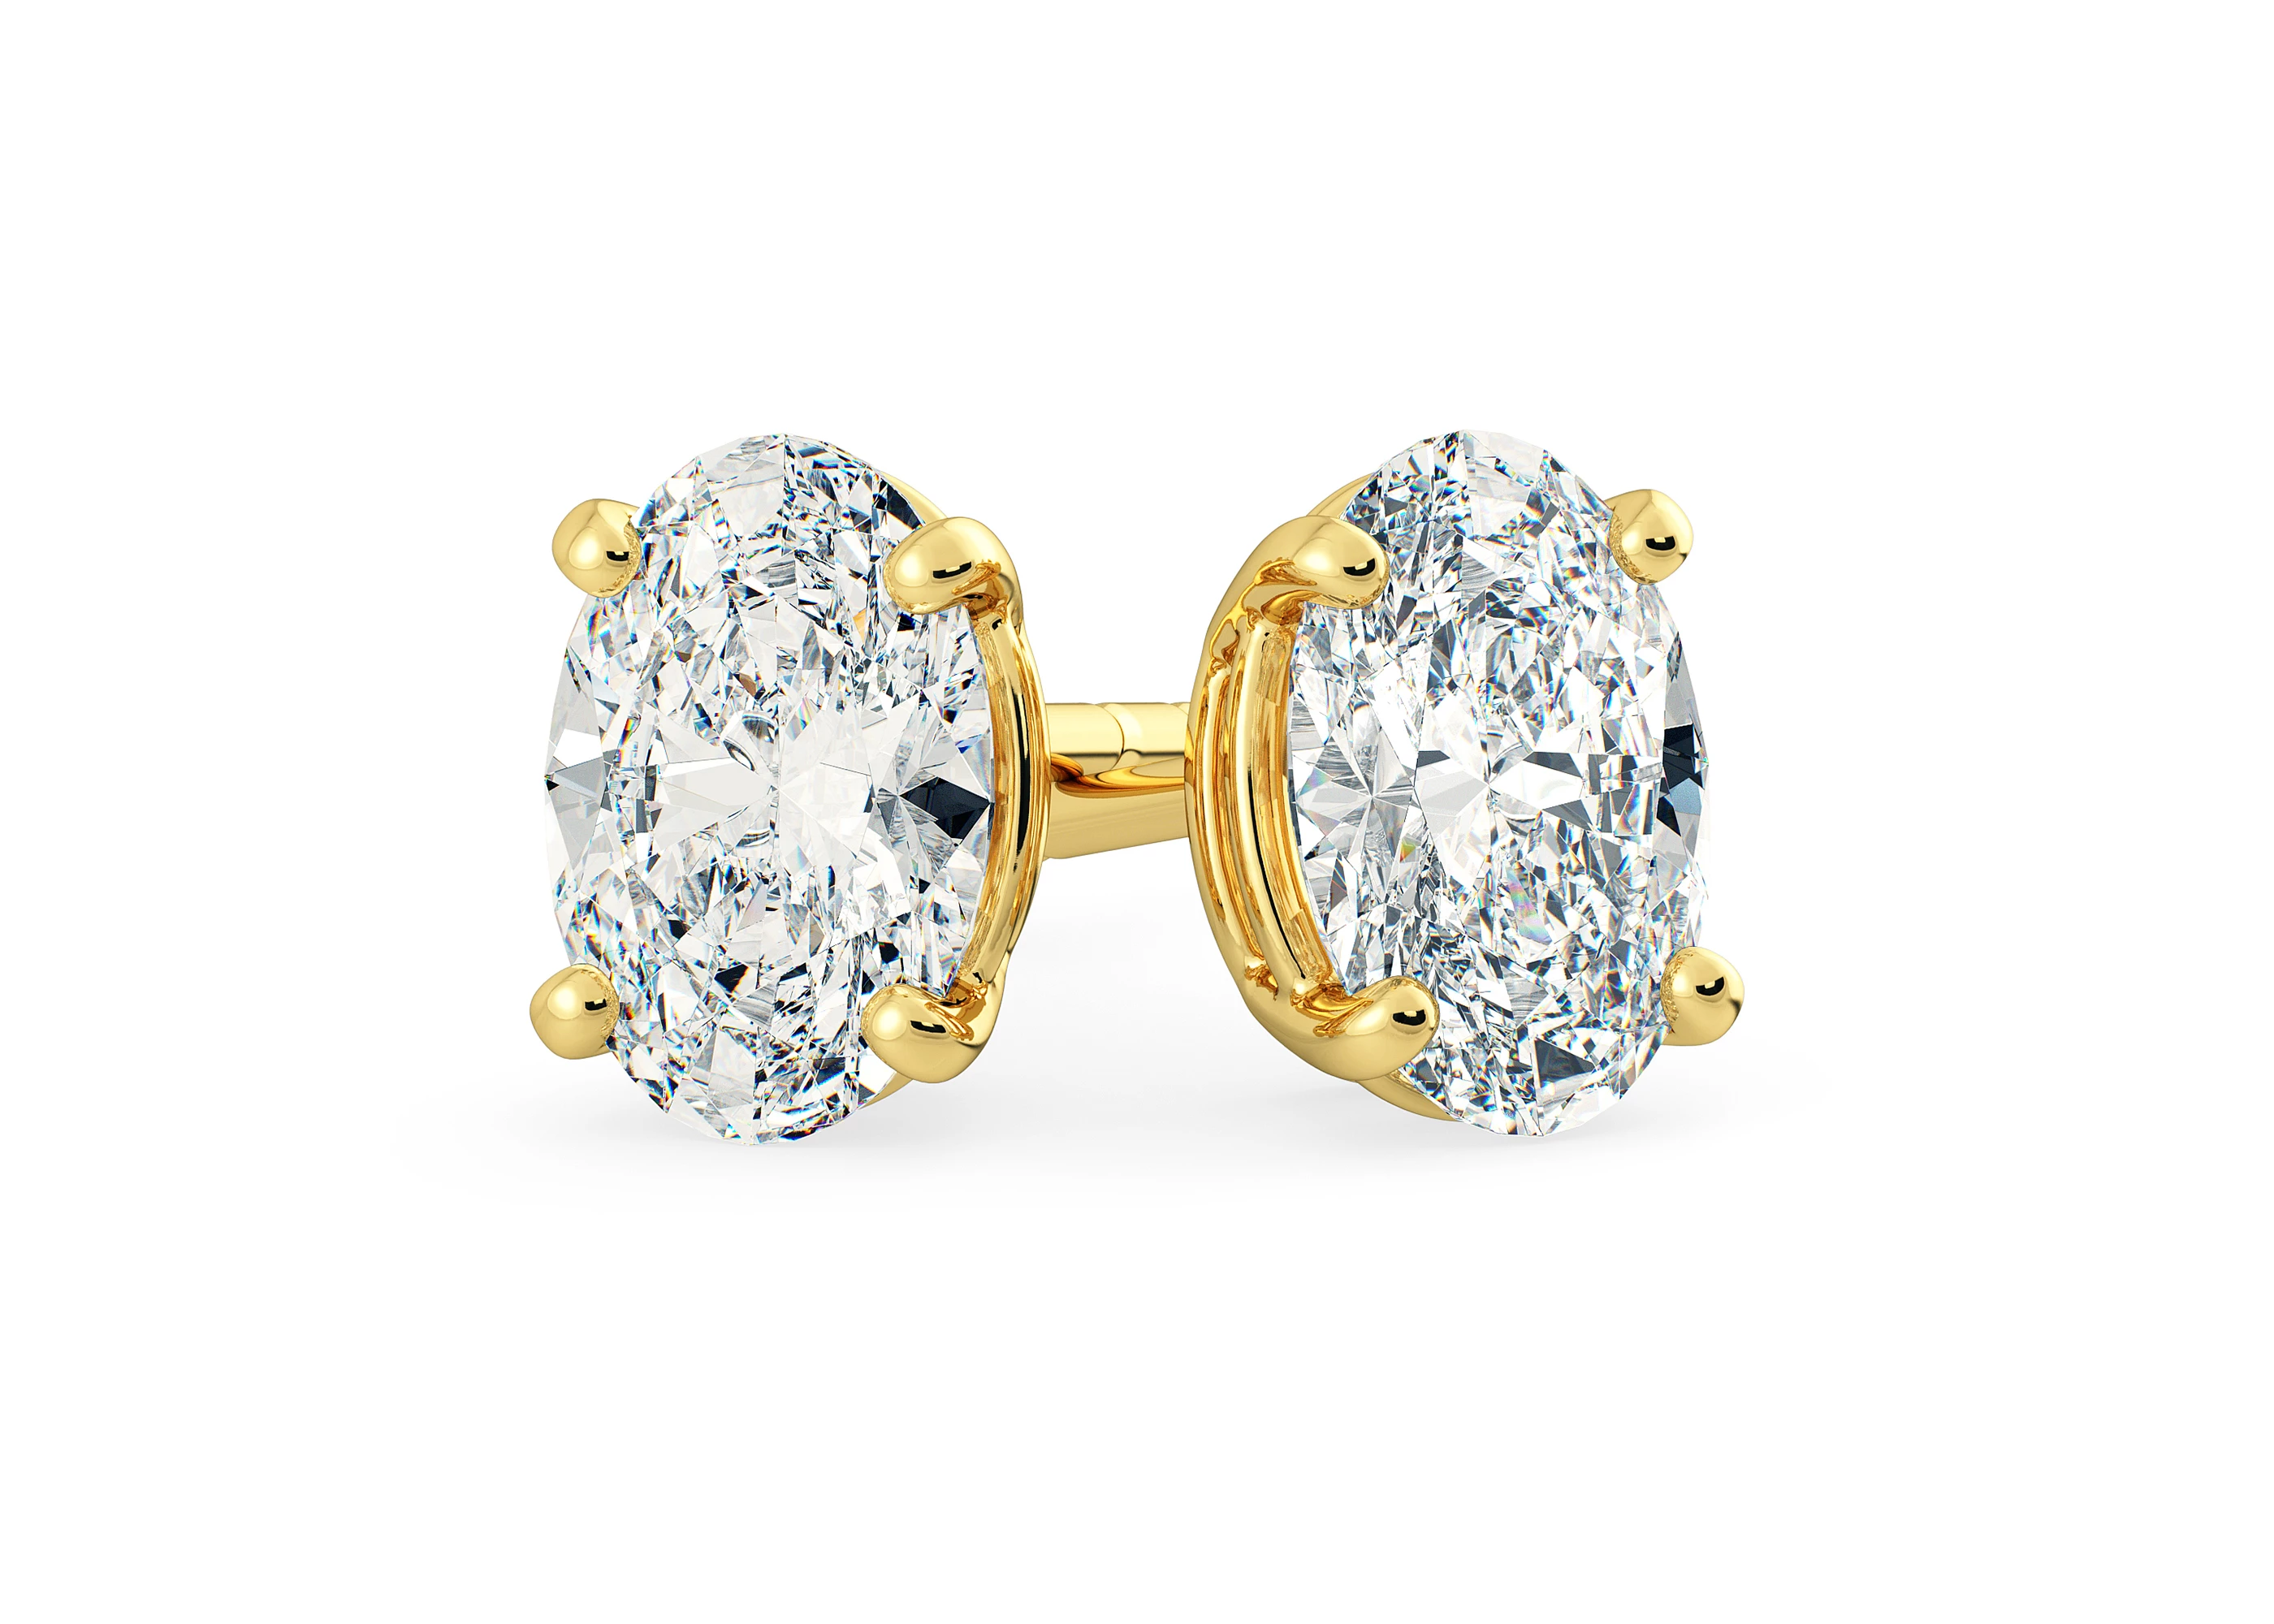 Ettore Oval Diamond Stud Earrings in 18K Yellow Gold with Butterfly Backs